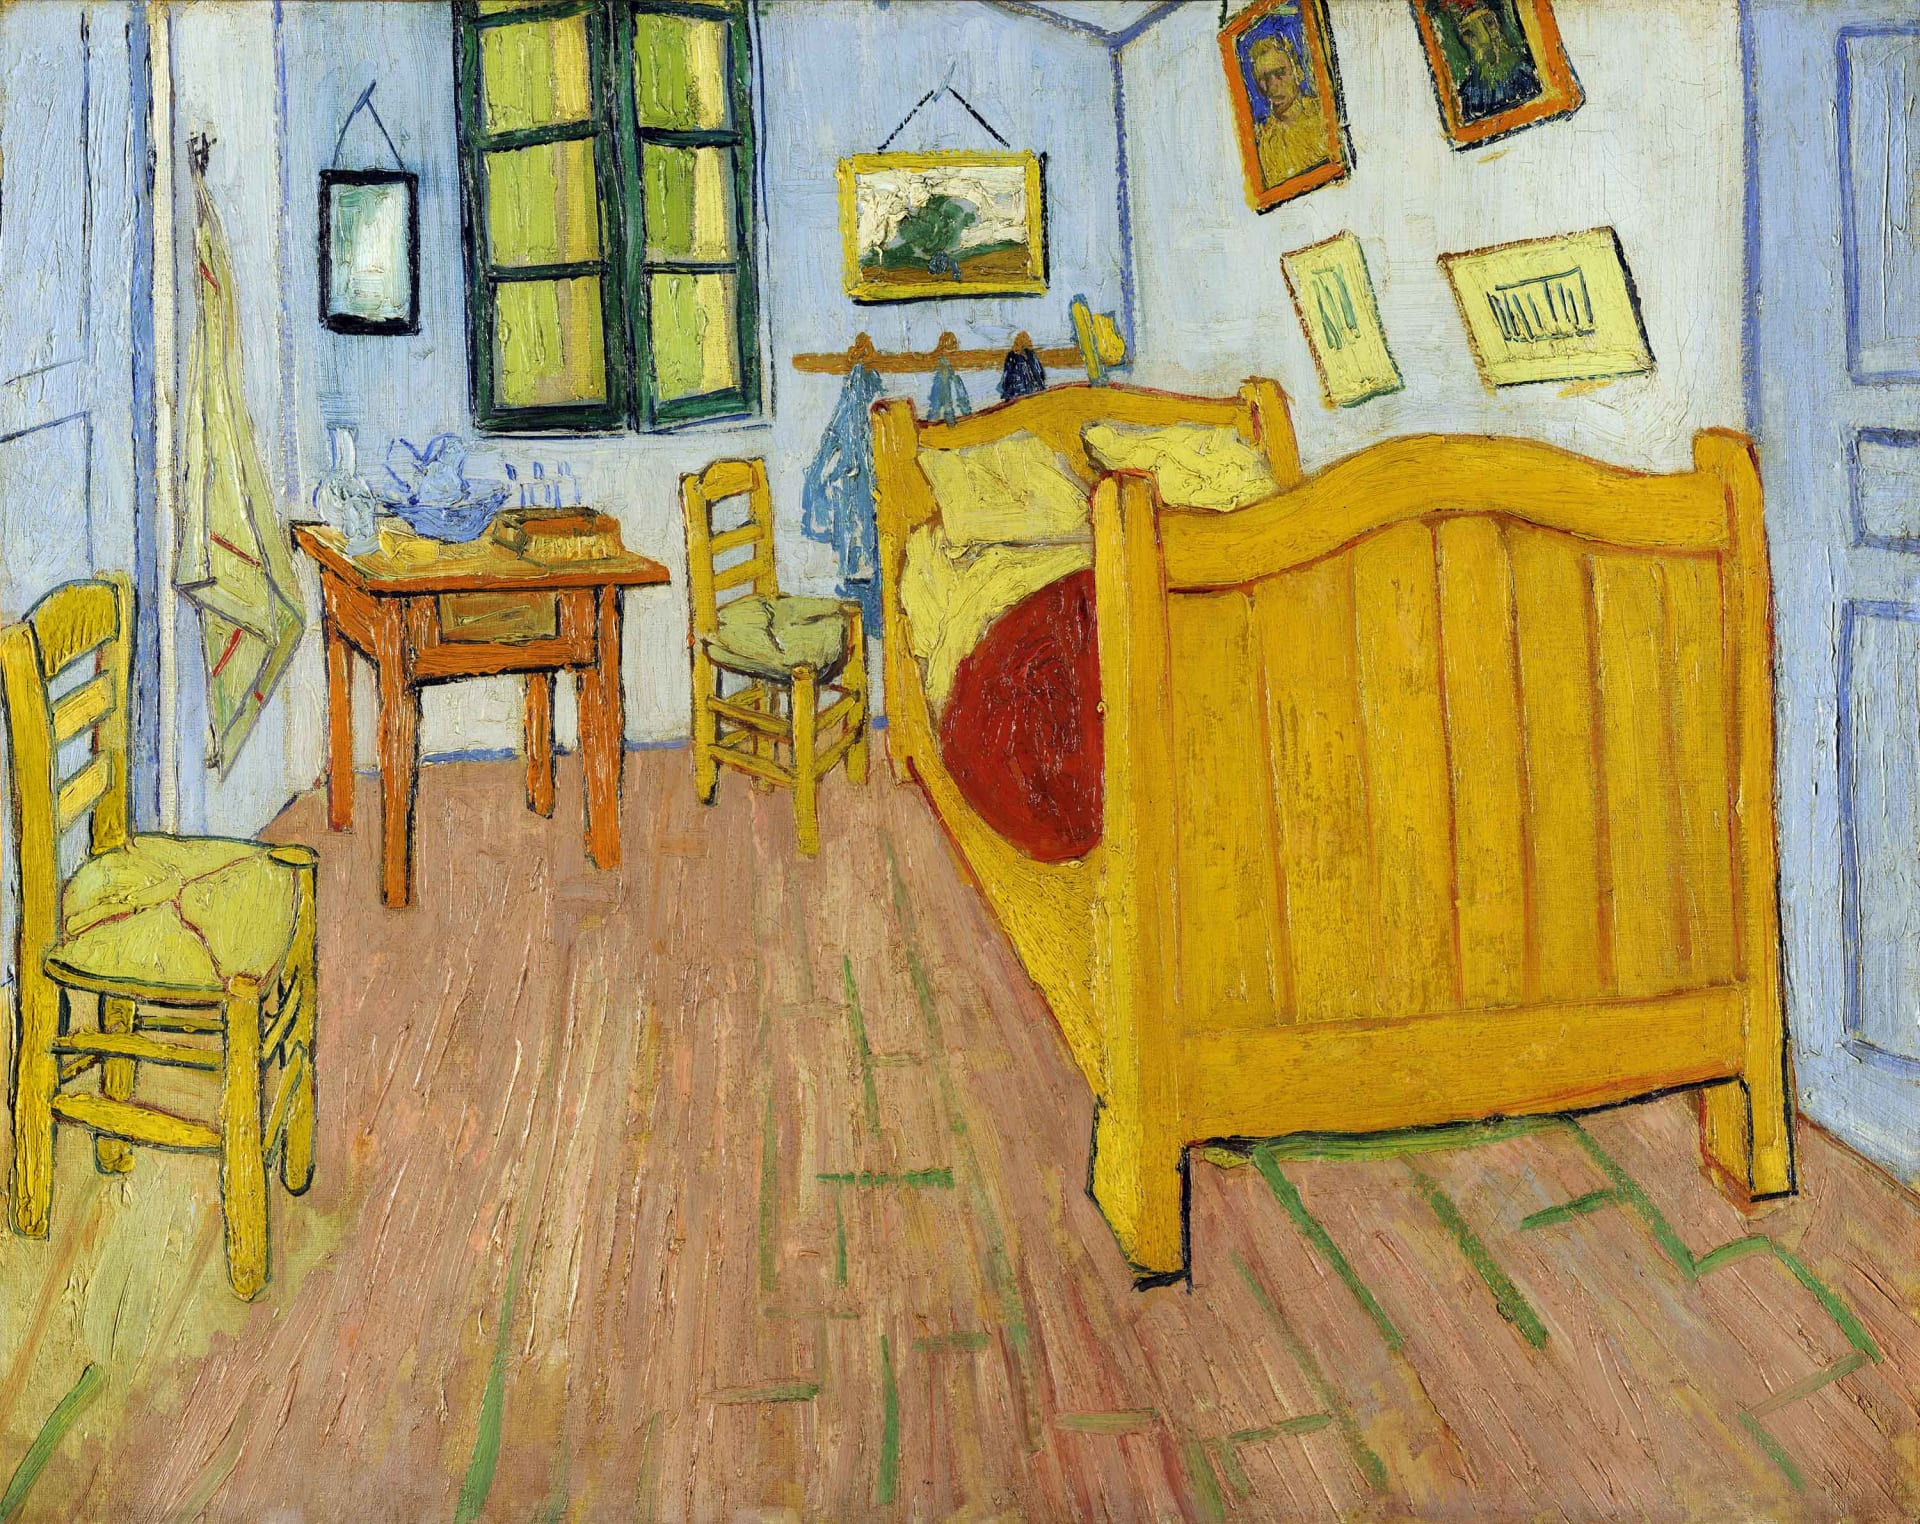  غرفة نوم في آرل للفنان فان جوخ